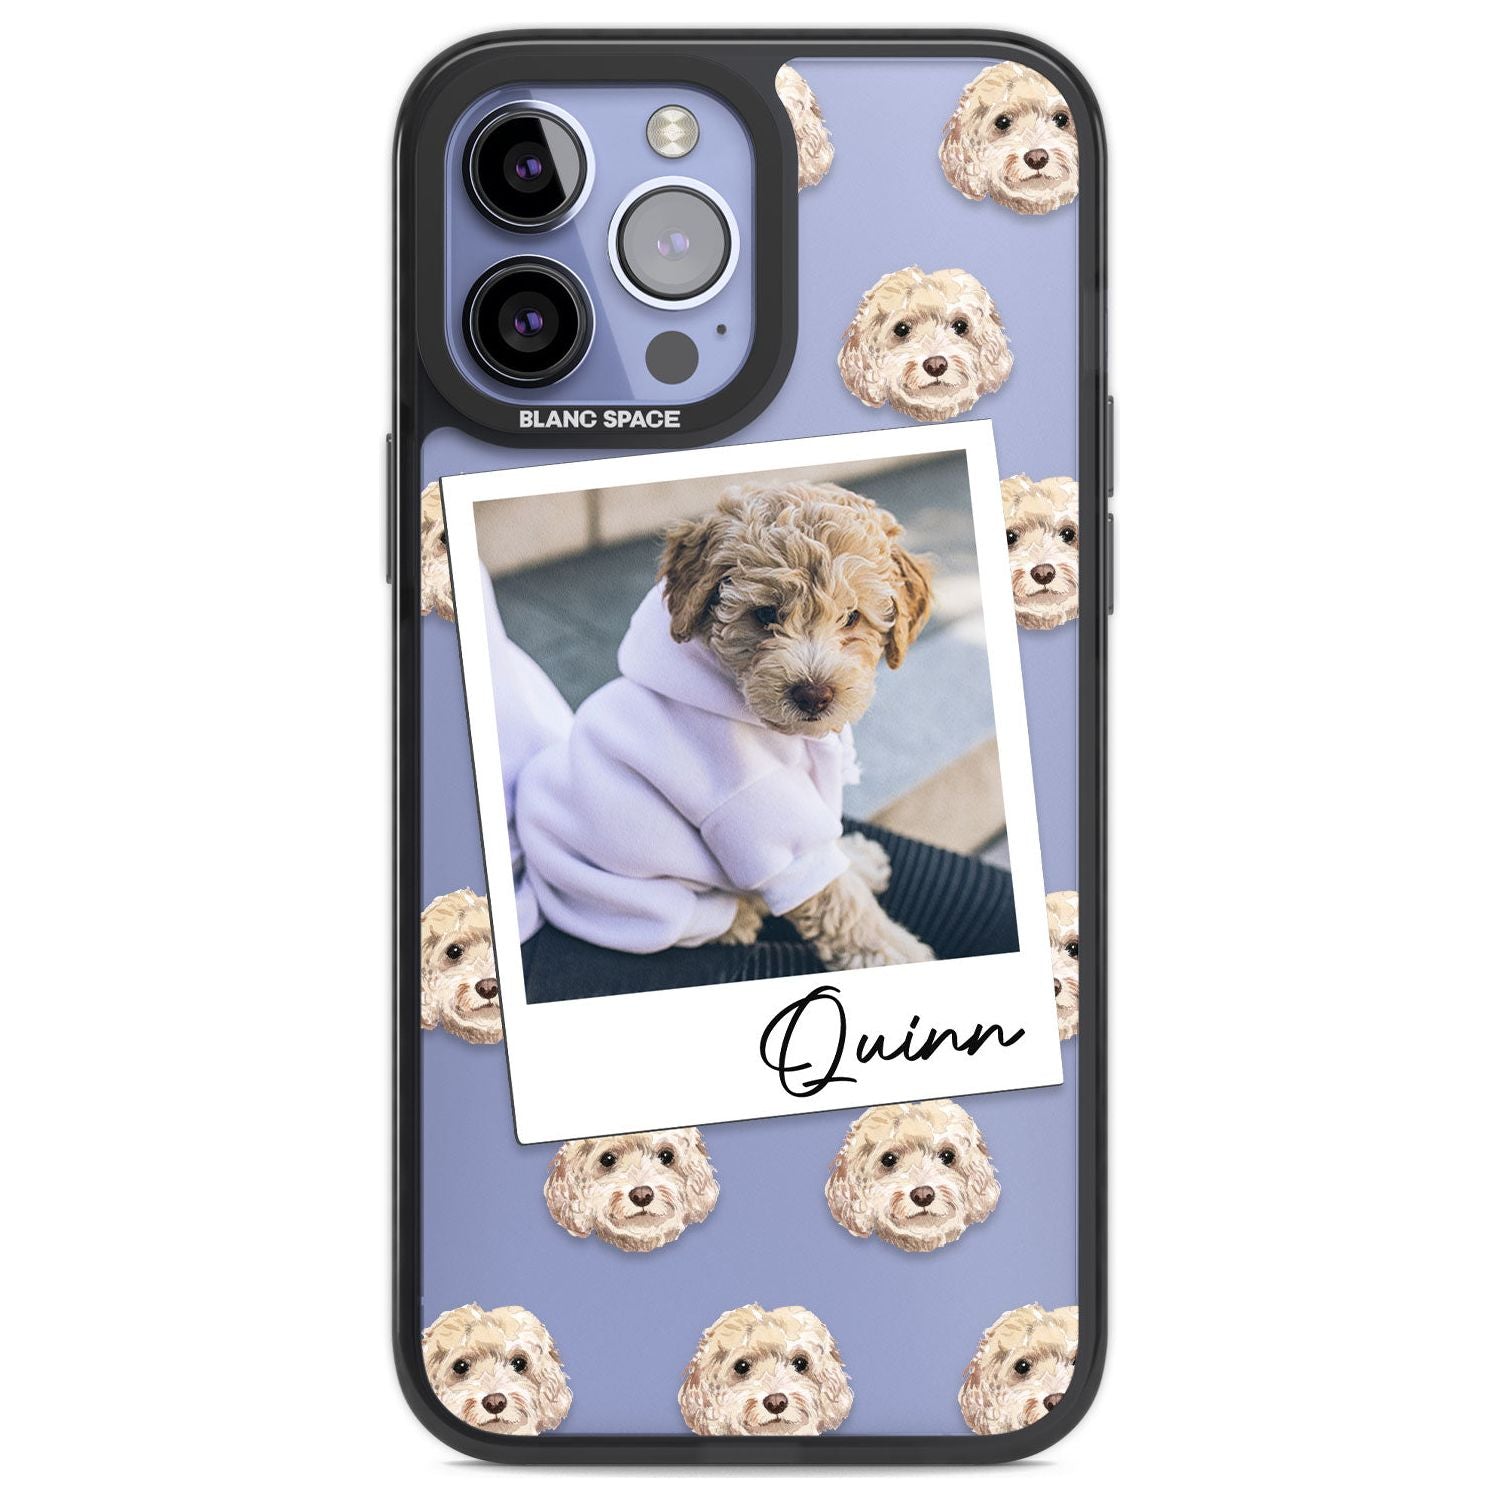 Personalised Cockapoo, Cream - Dog Photo Custom Phone Case iPhone 13 Pro Max / Black Impact Case,iPhone 14 Pro Max / Black Impact Case Blanc Space